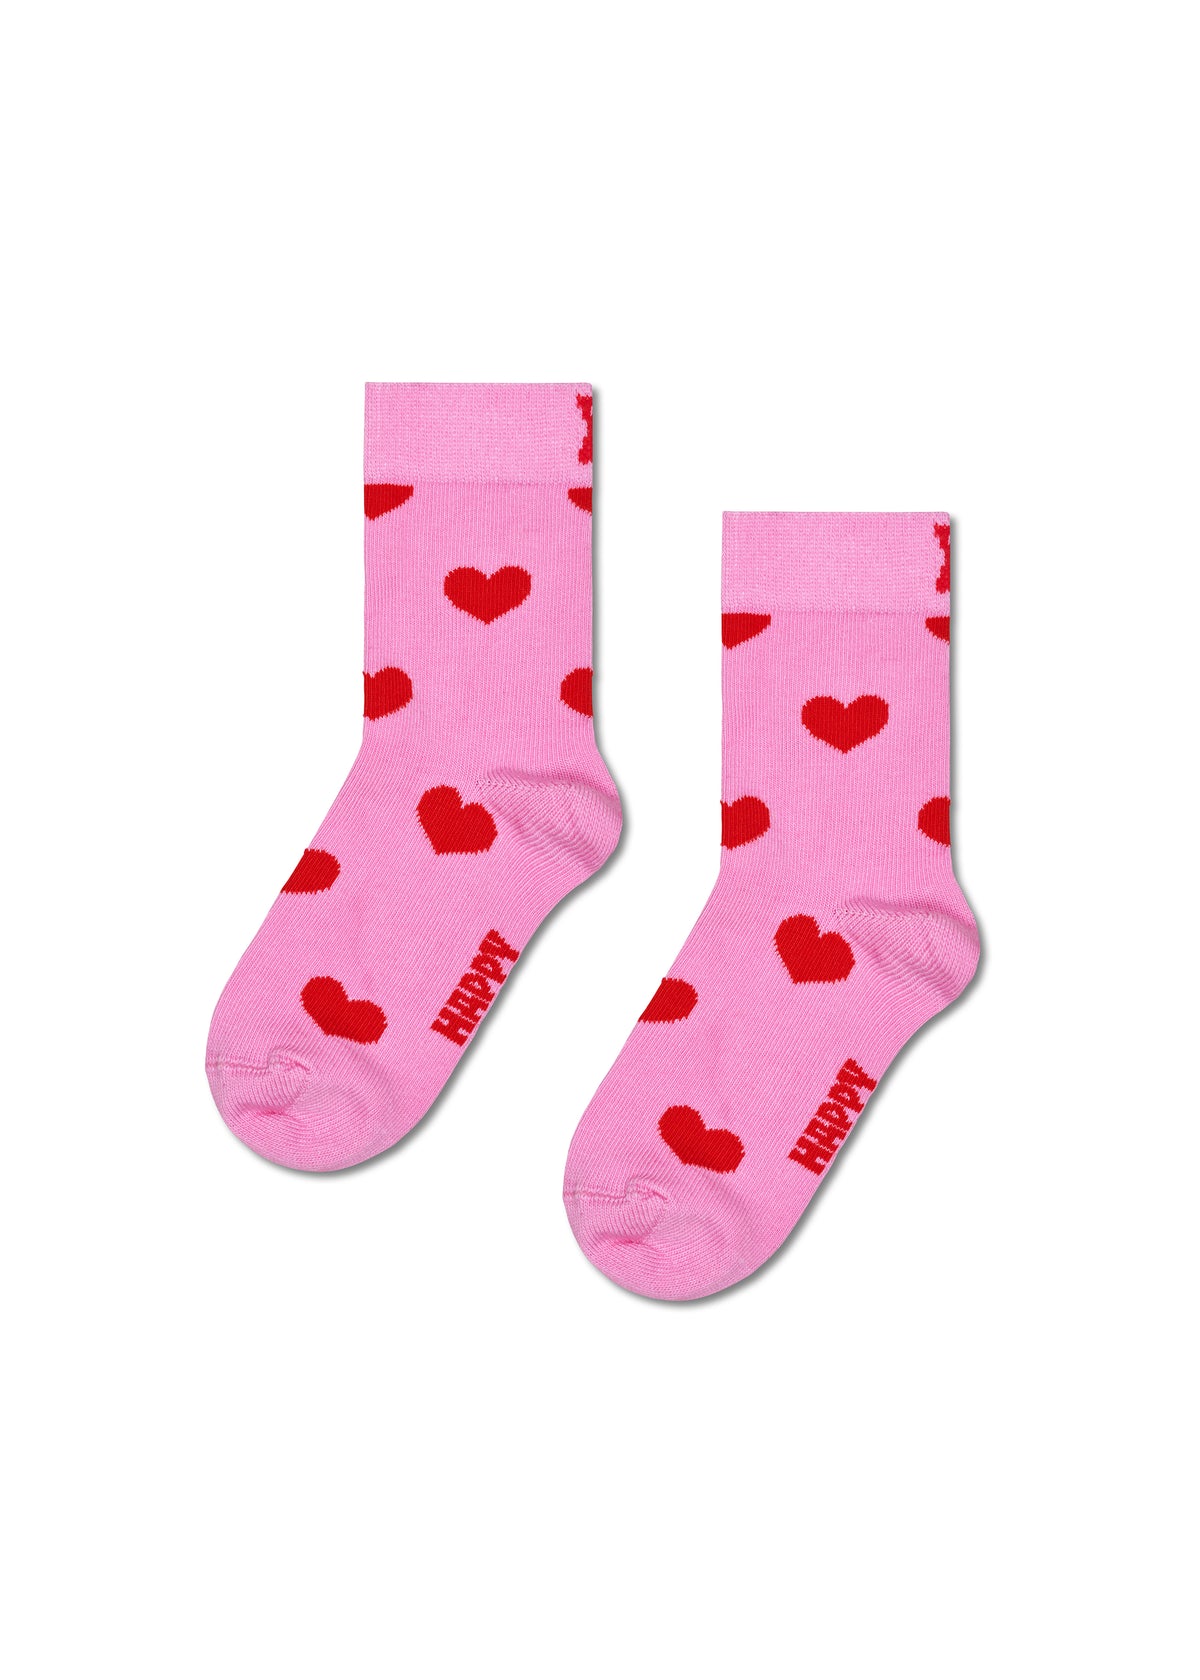 Children's socks - Heart Pink